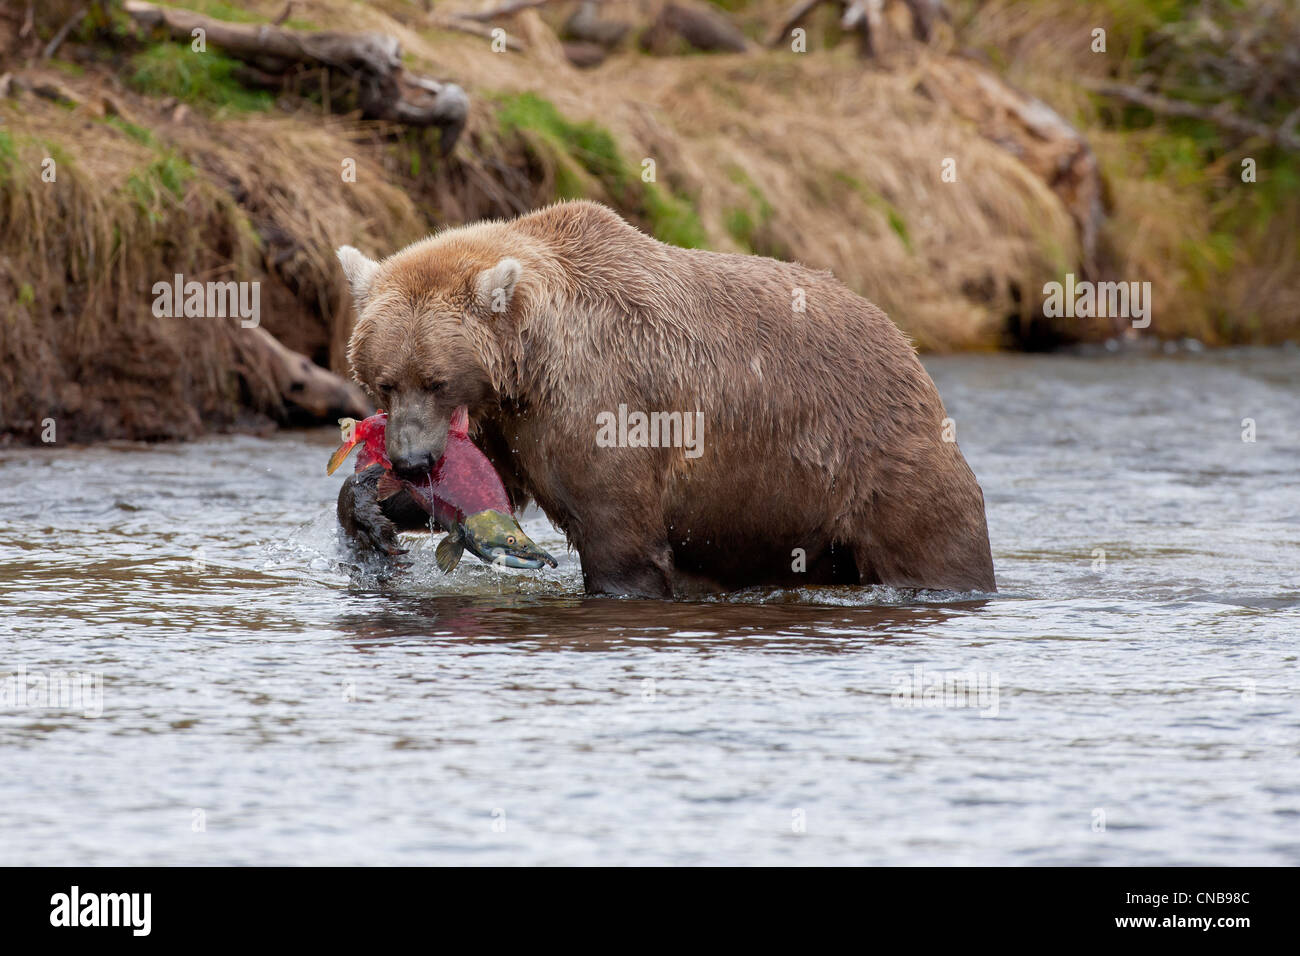 Brauner Bär fängt einen Lachs in seinen Mund, Grizzly Creek, Katmai-Nationalpark und Konserve, Südwest-Alaska, Sommer Stockfoto